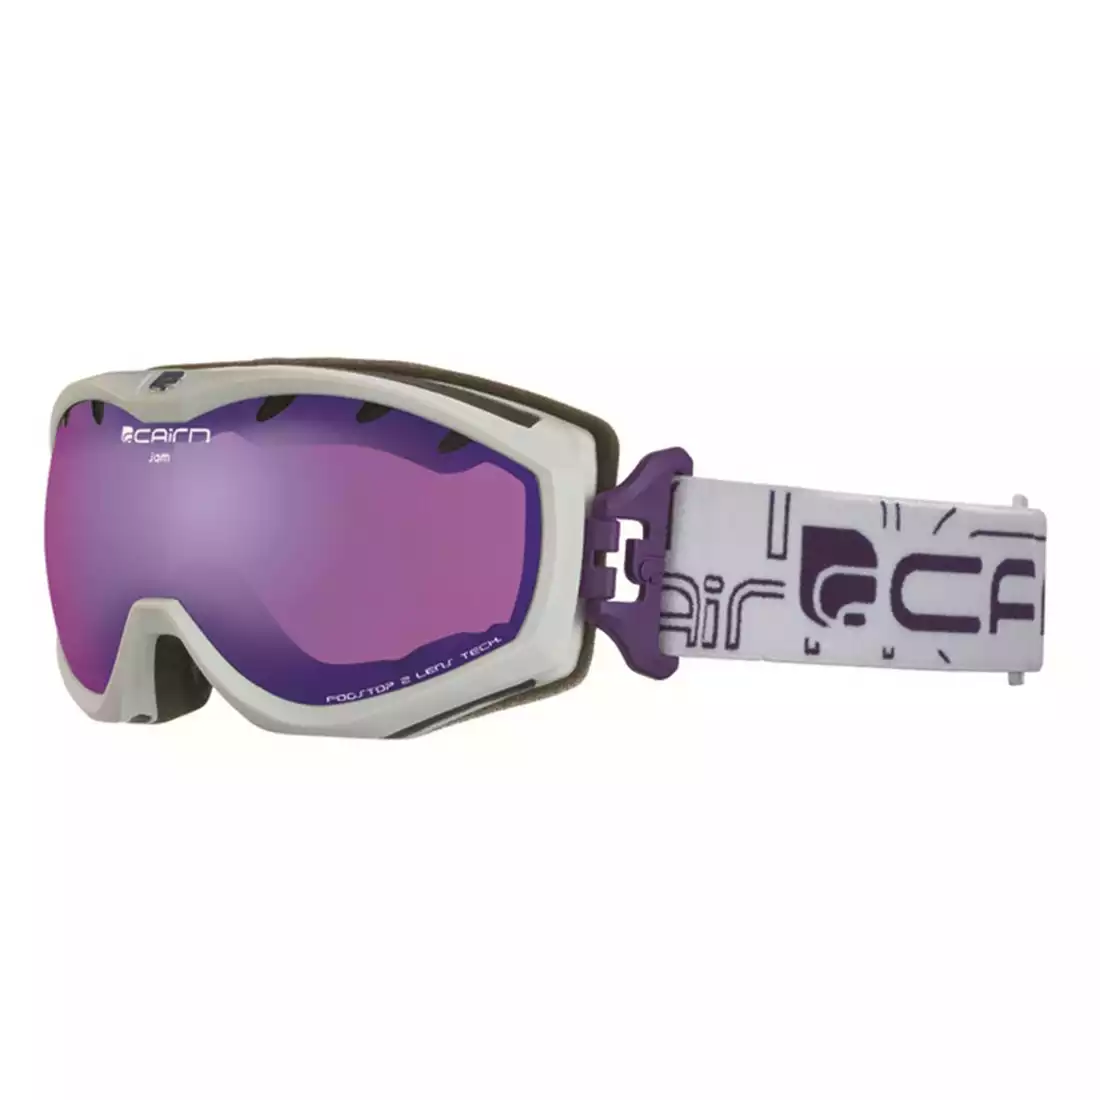 CAIRN gogle narciarskie/snowboardowe JAM SPX3000 IUM 8201, white, 5805718201